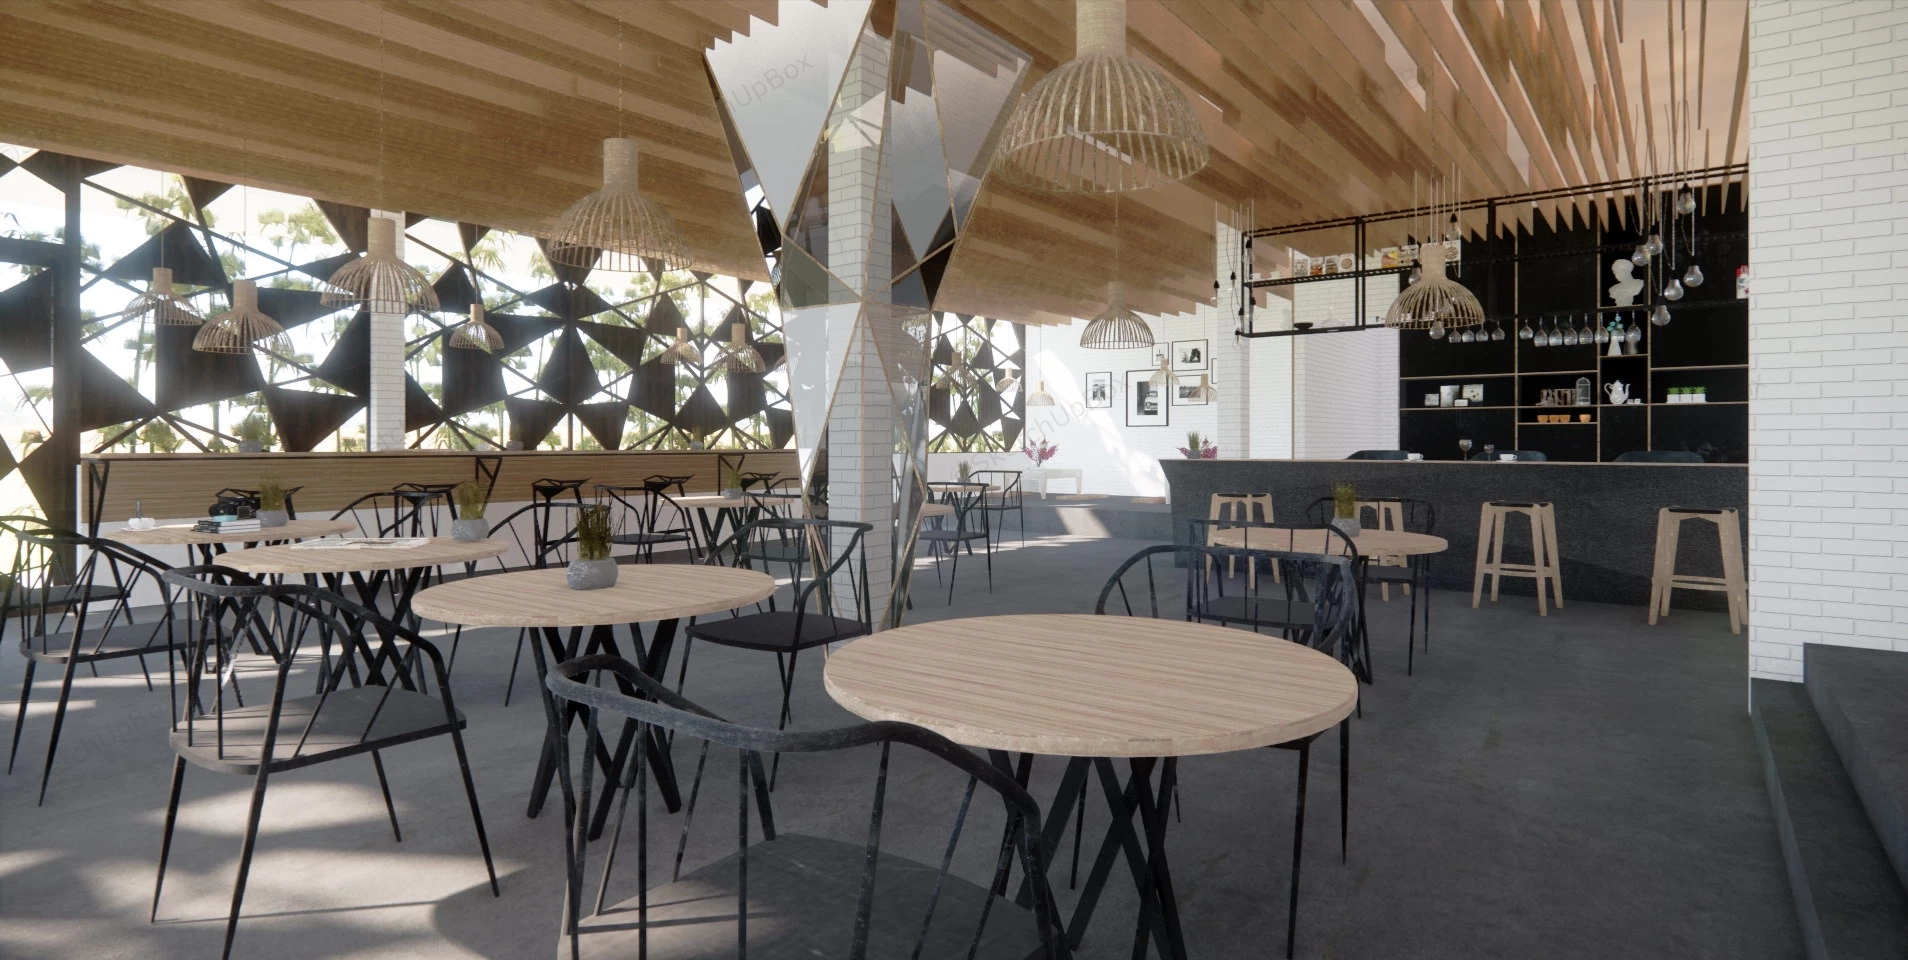 Industrial Coffee Shop Interior Design sketchup model preview - SketchupBox